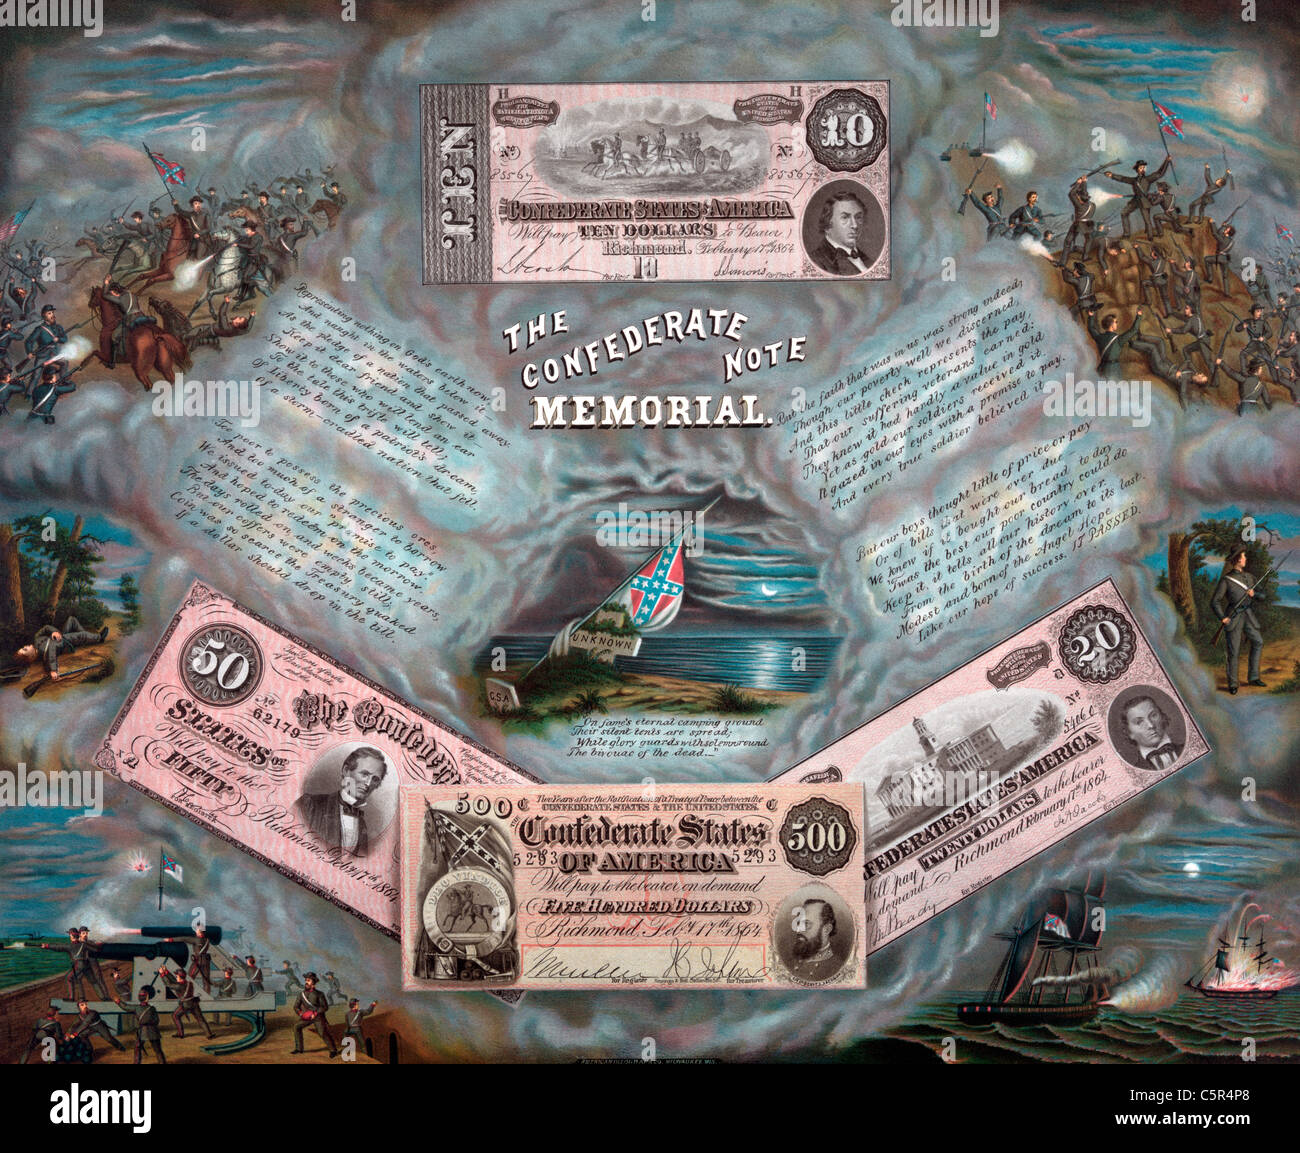 Remarque La Confederate memorial - Confederate argent entouré par les images de la Confédération - Guerre civile USA Banque D'Images